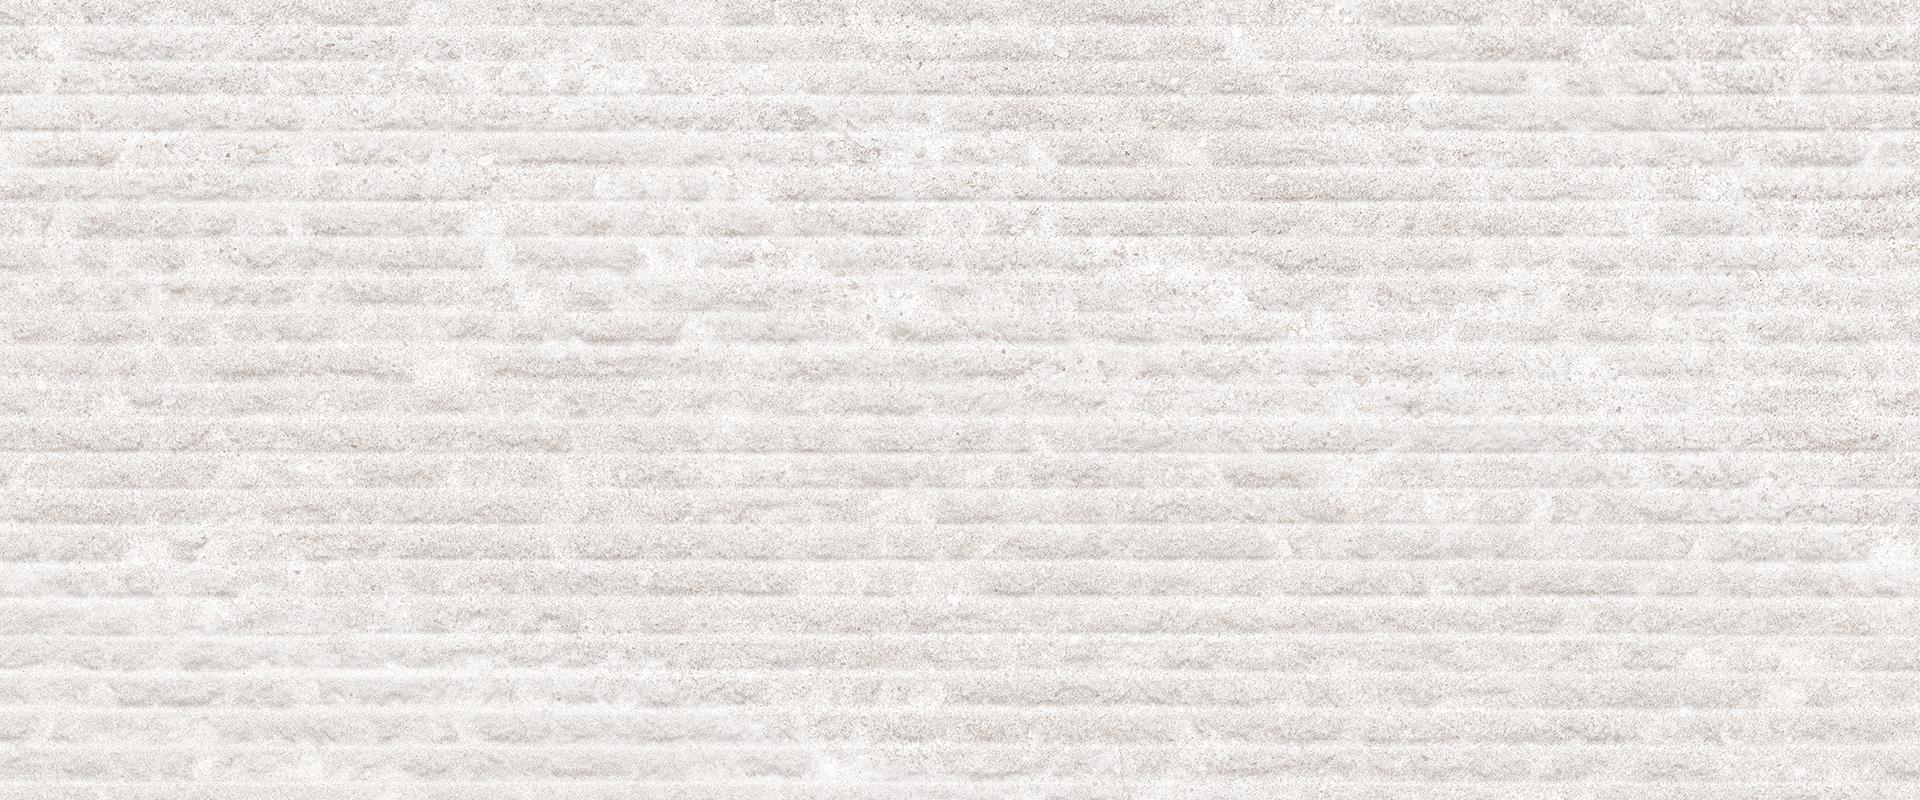 12 x 24 Stonehenge White DECO Rectified Porcelain tile 